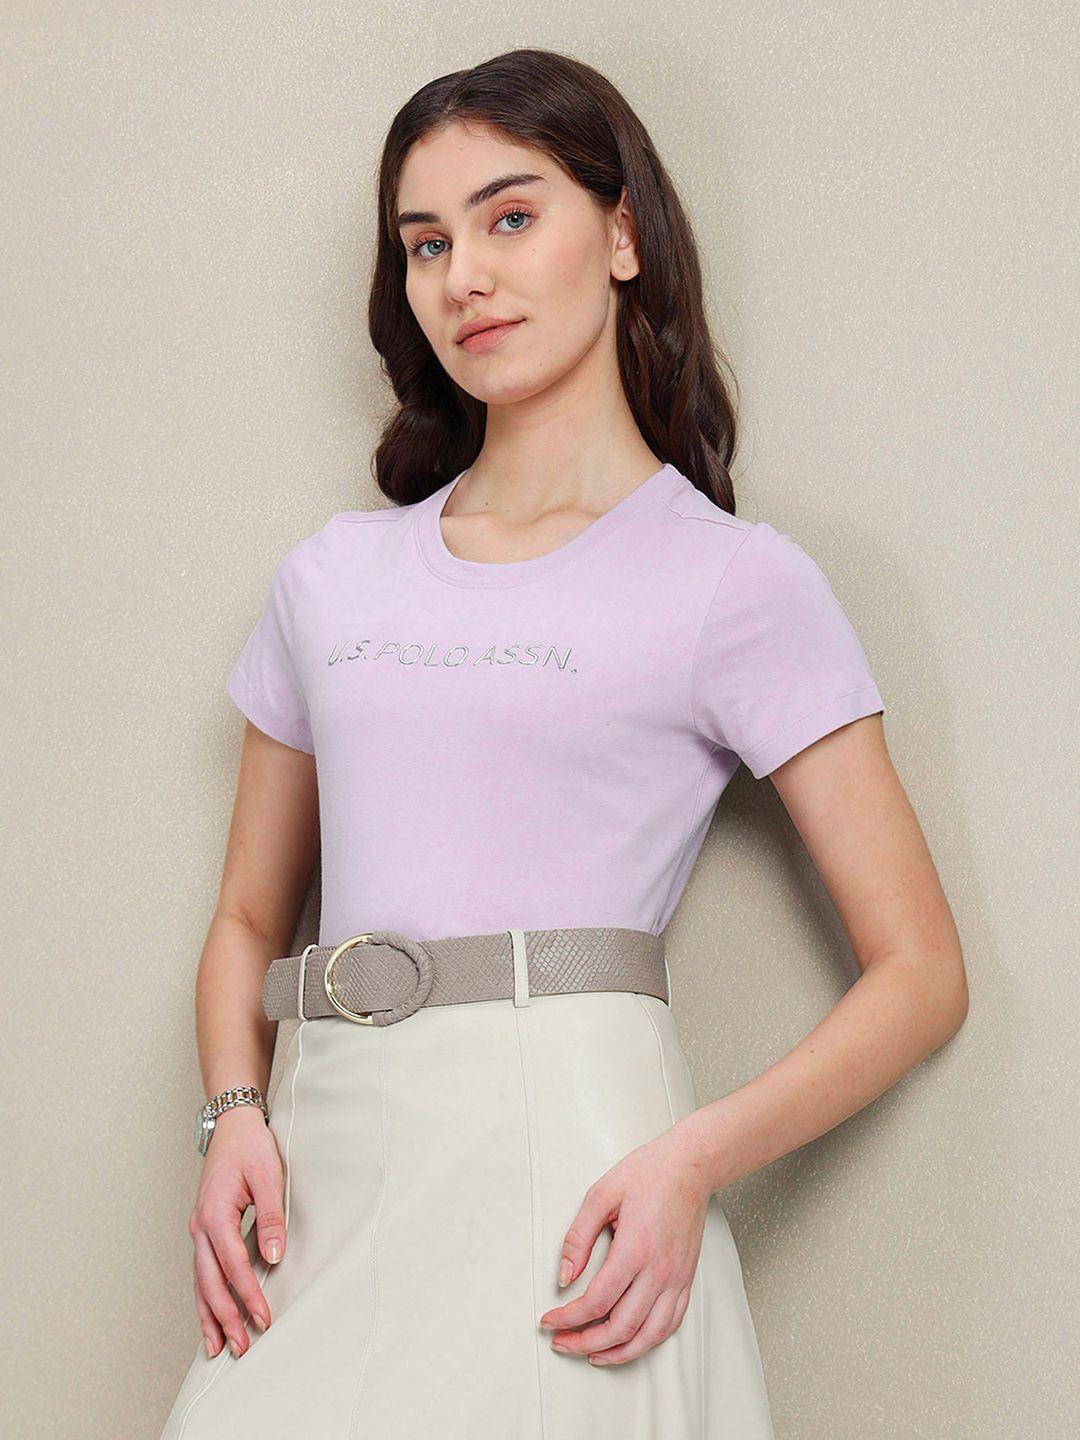 u.s. polo assn. women printed pure cotton t-shirt